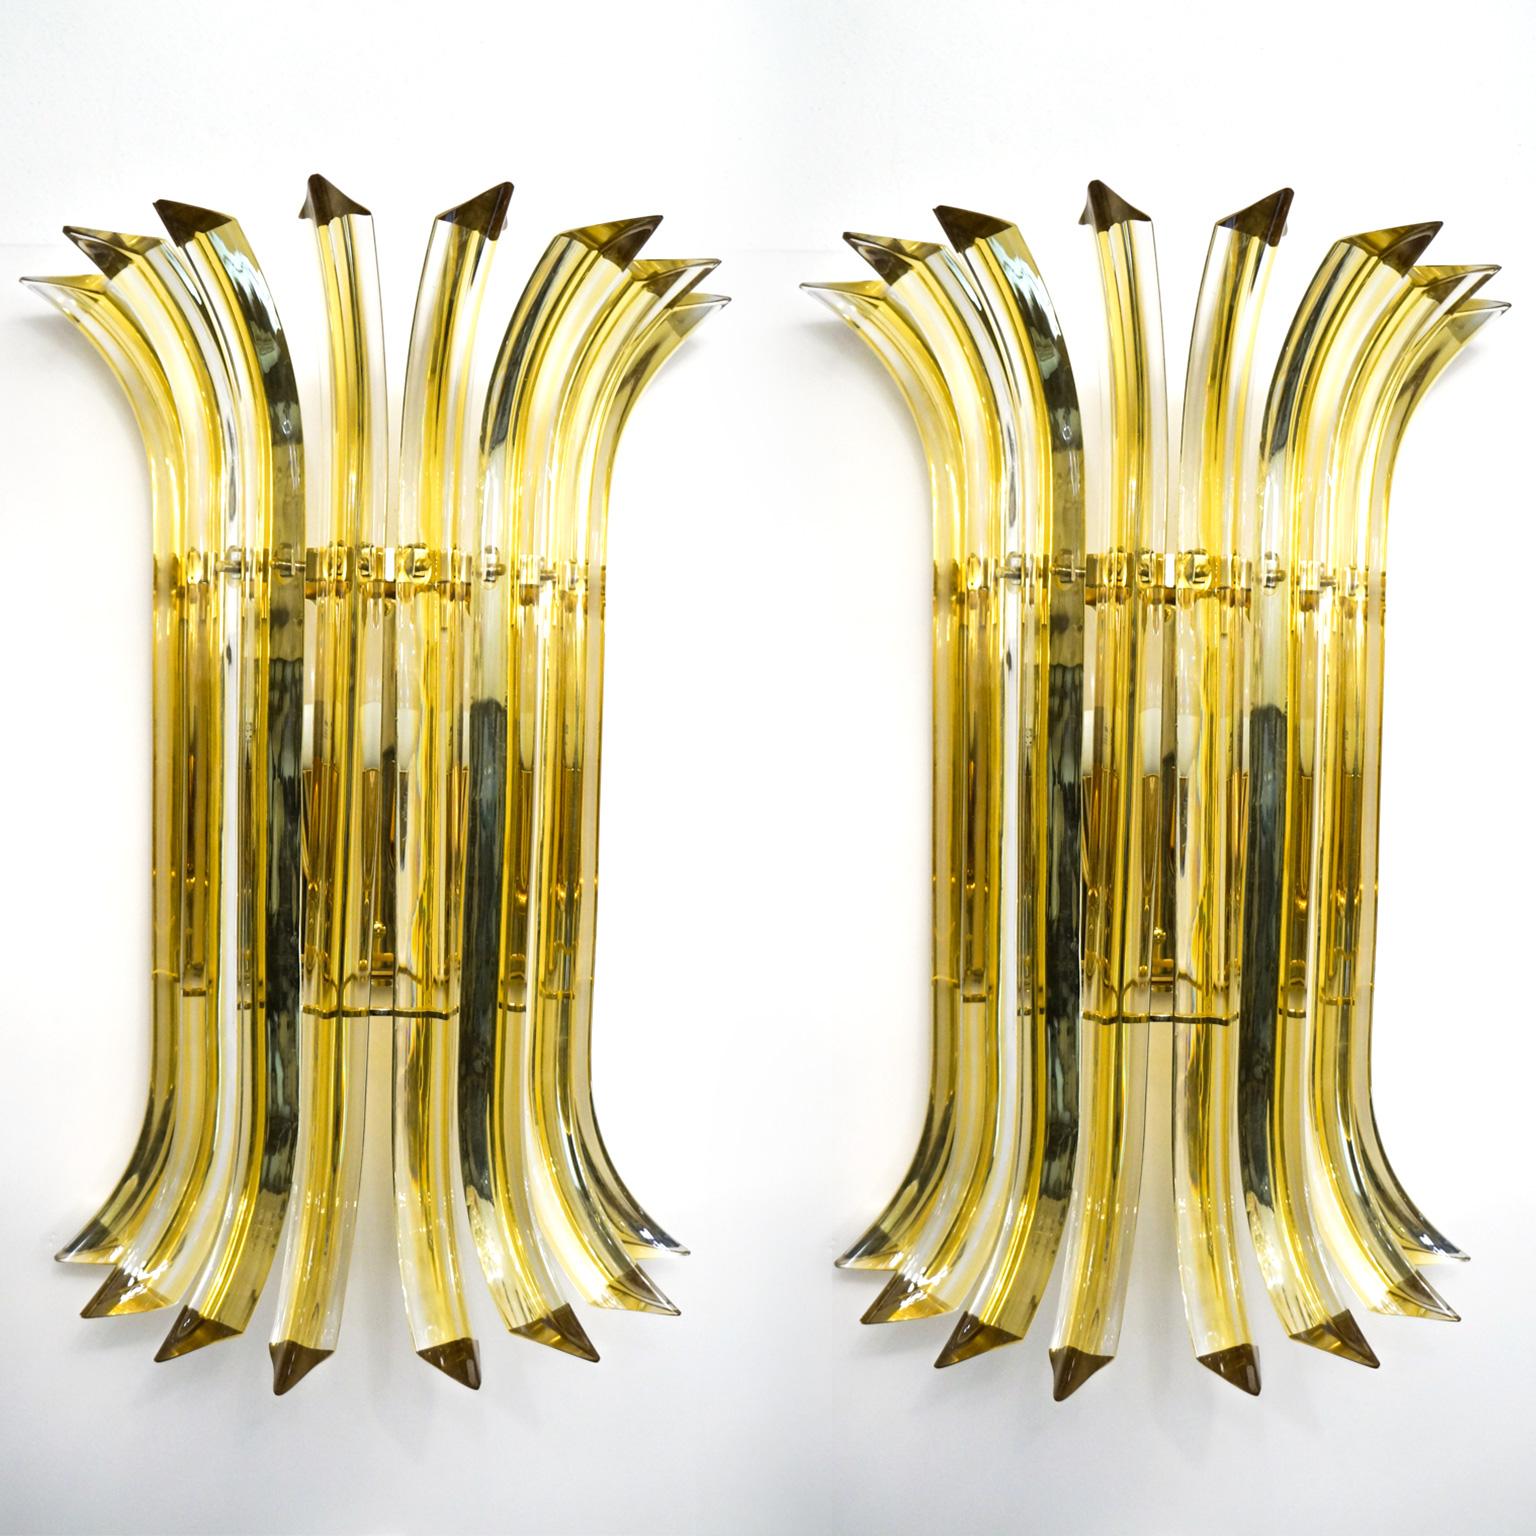 Eine sehr elegante Wandleuchte, die acht Glaselemente präsentiert, die in das Glas gebogen sind, aber mit weichen und leichten Merkmalen, Farbe Bernstein. 
Entworfen vom Meister Alberto Donà im Jahr 1985.

Die Produkte sind vollständig